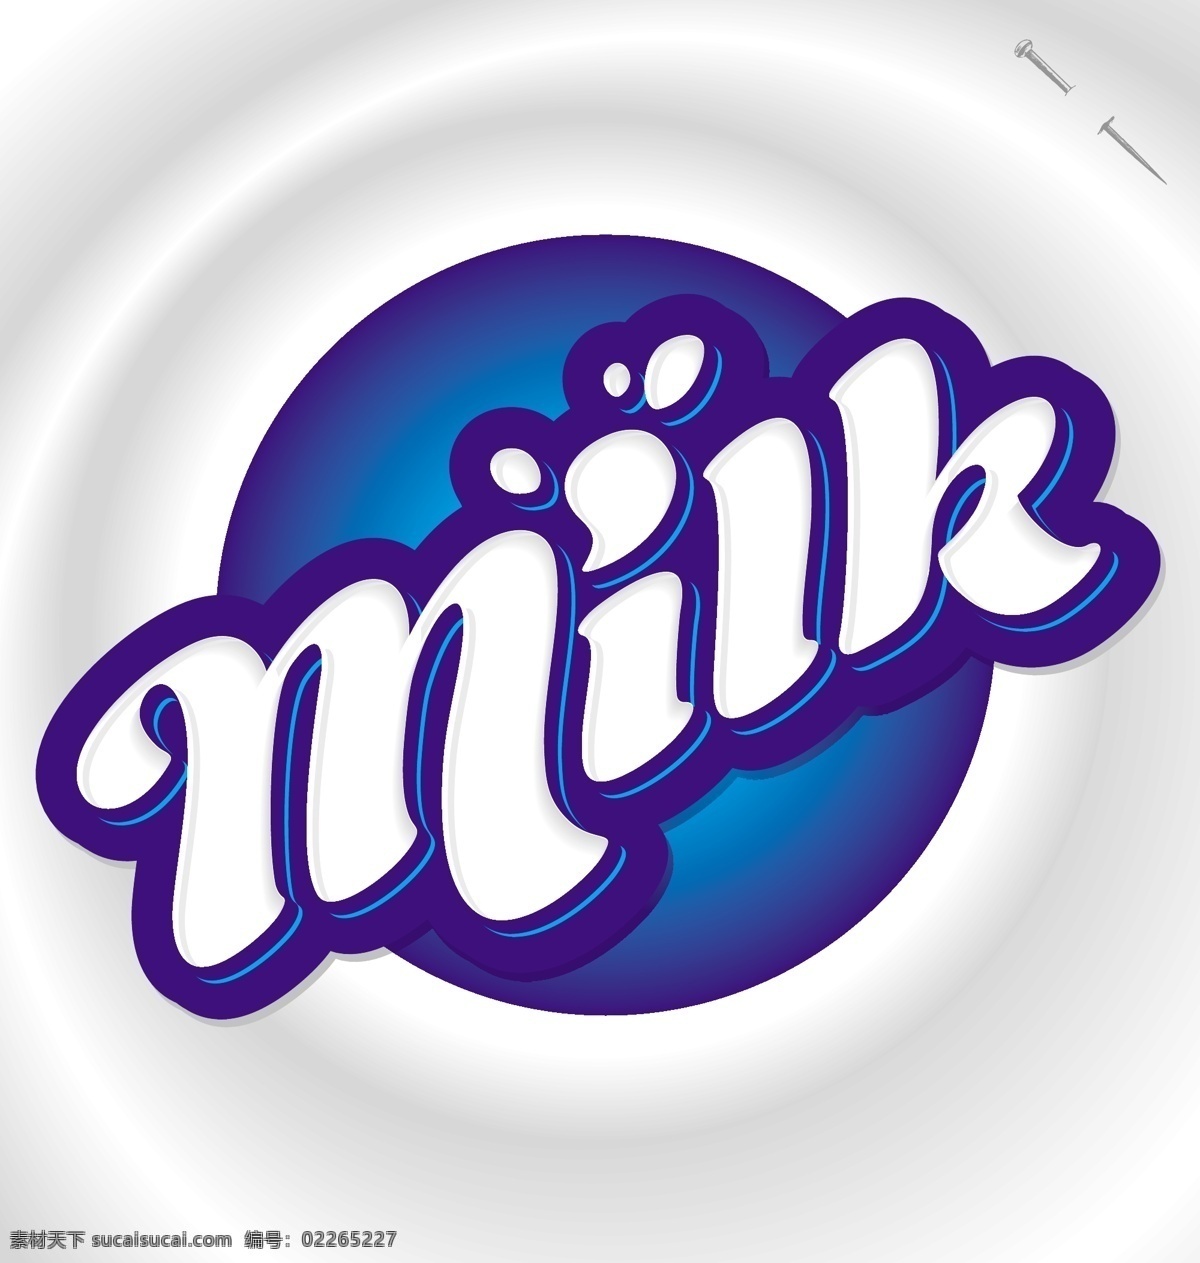 包装设计 抽象设计 卡通背景 卡通设计 牛奶 牛奶广告 矢量设计 艺术设计 标志 矢量 模板下载 牛奶标志 牛奶设计 牛奶图标 牛奶标签 牛奶商标 牛奶logo 淘宝素材 淘宝促销标签